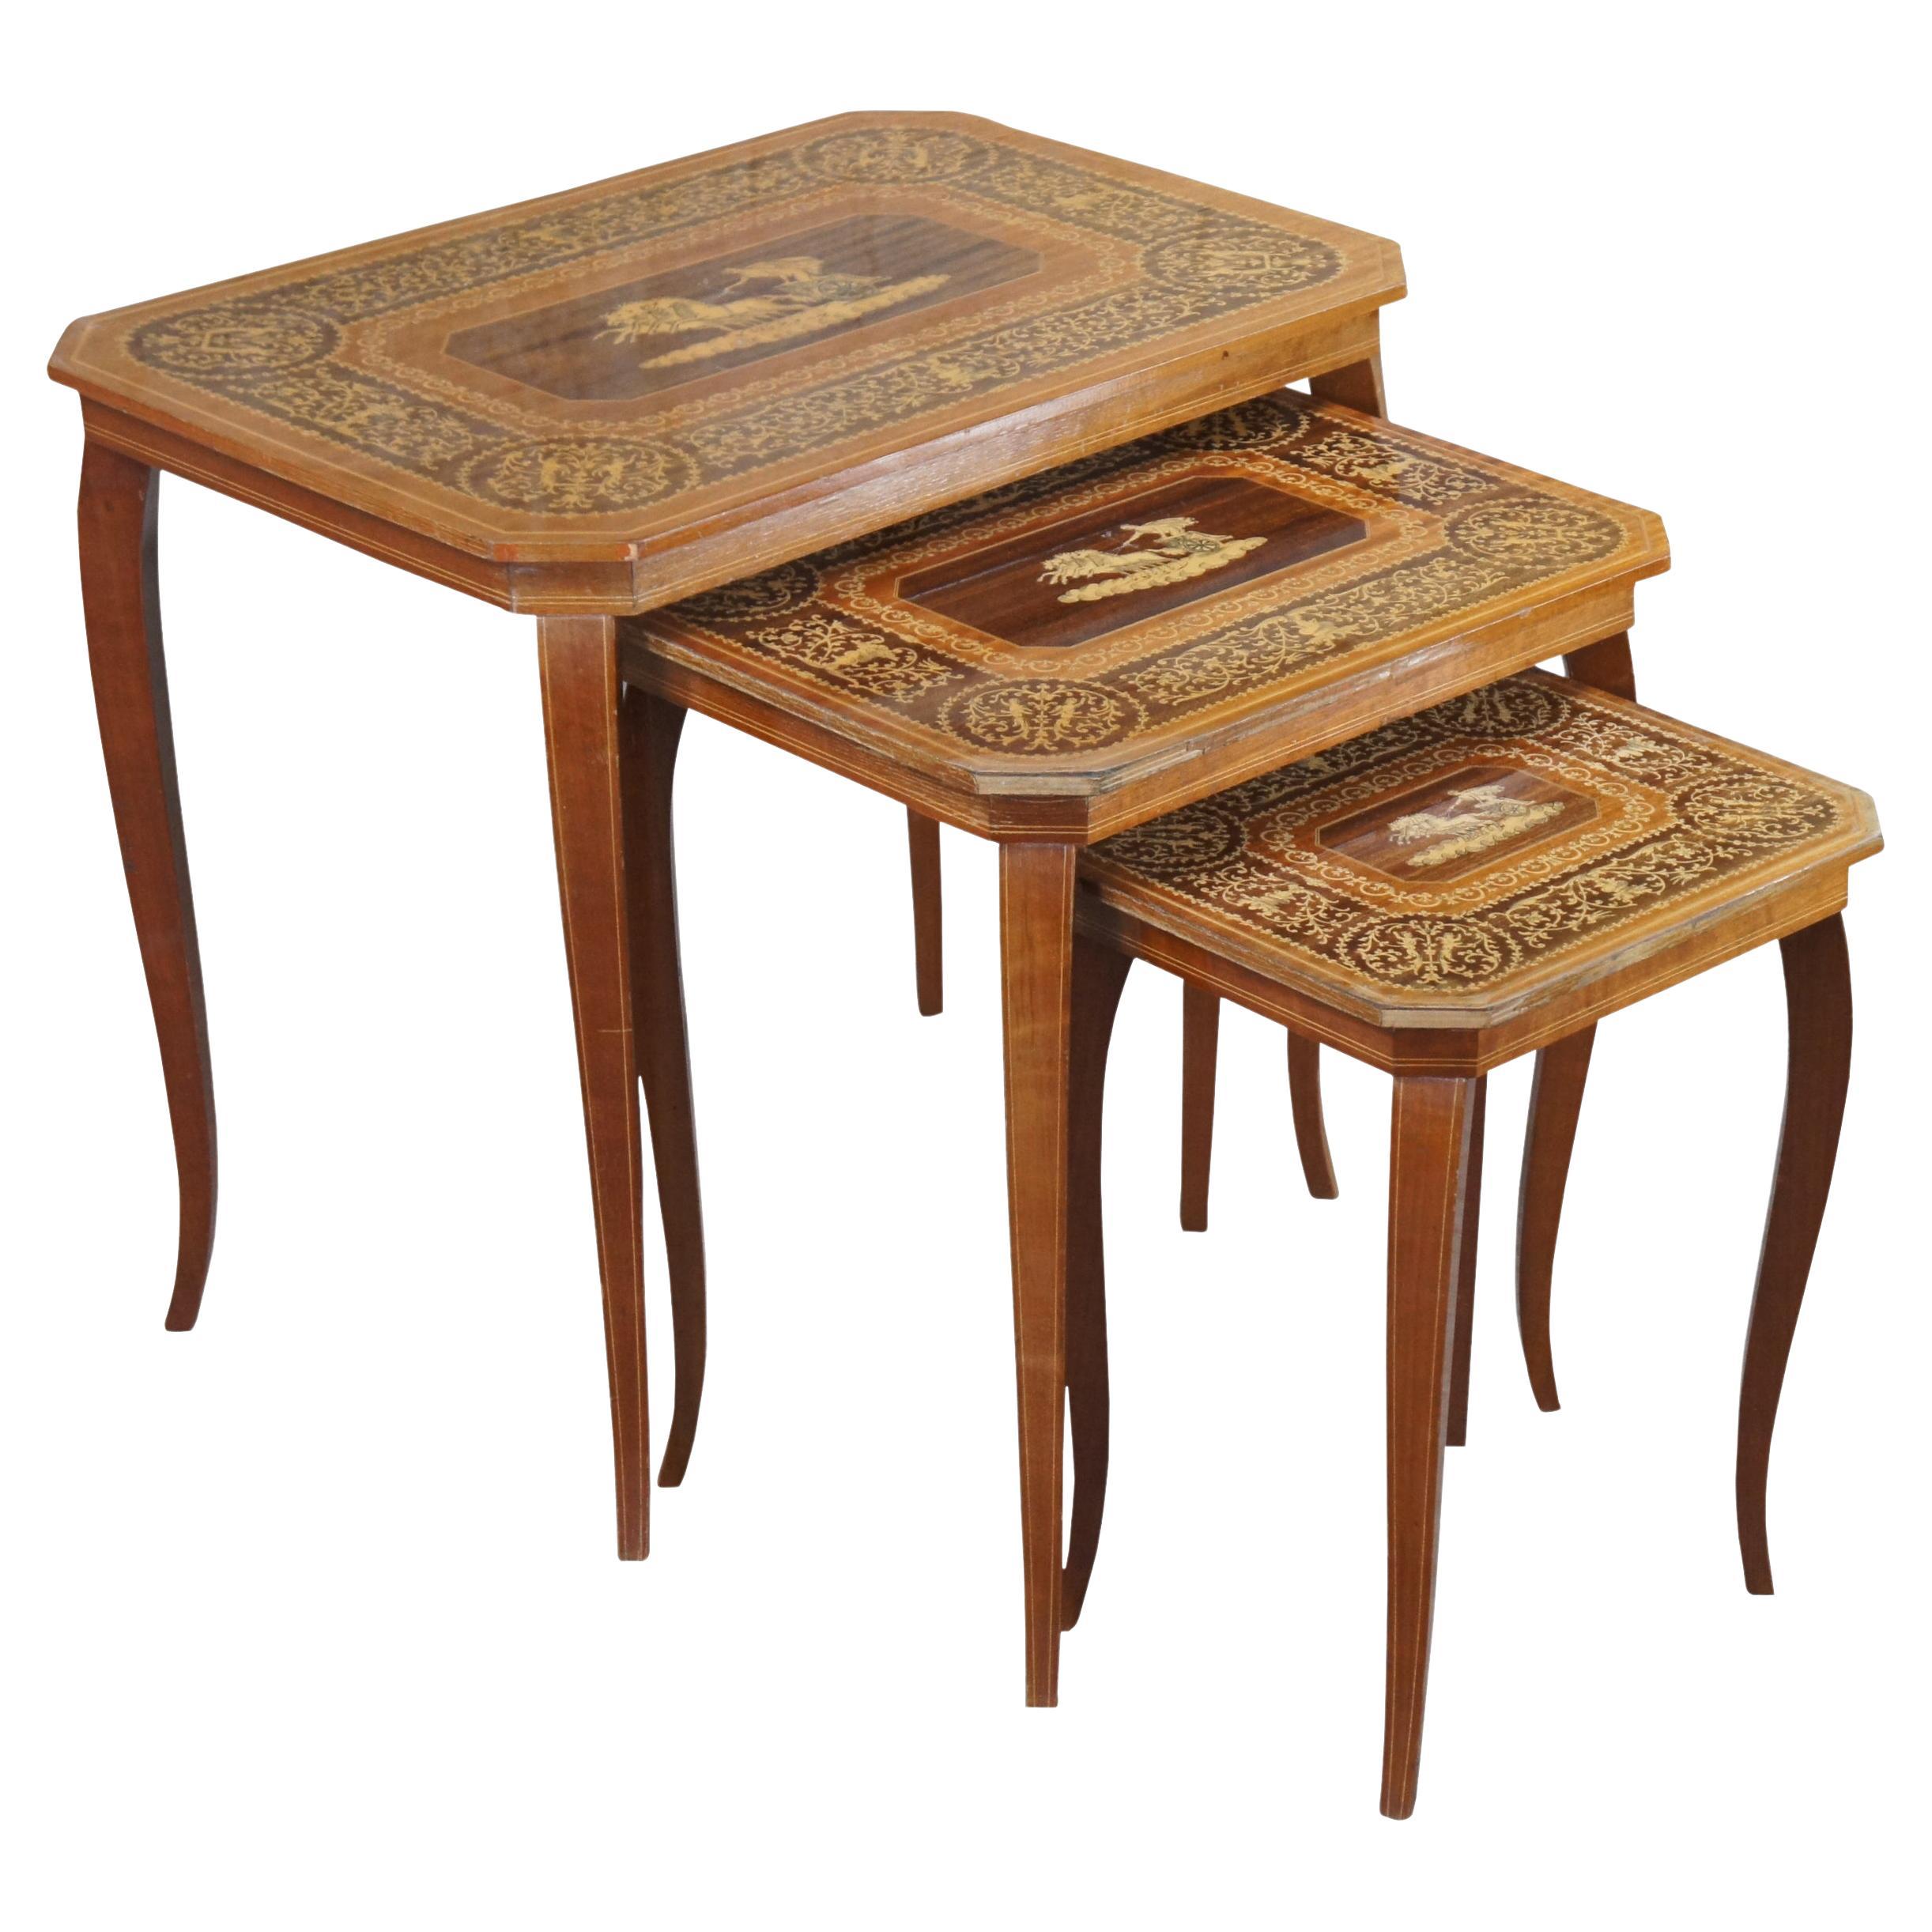 3 tables d'appoint gigognes italiennes néo-grec et néoclassiques incrustées en bois de satin